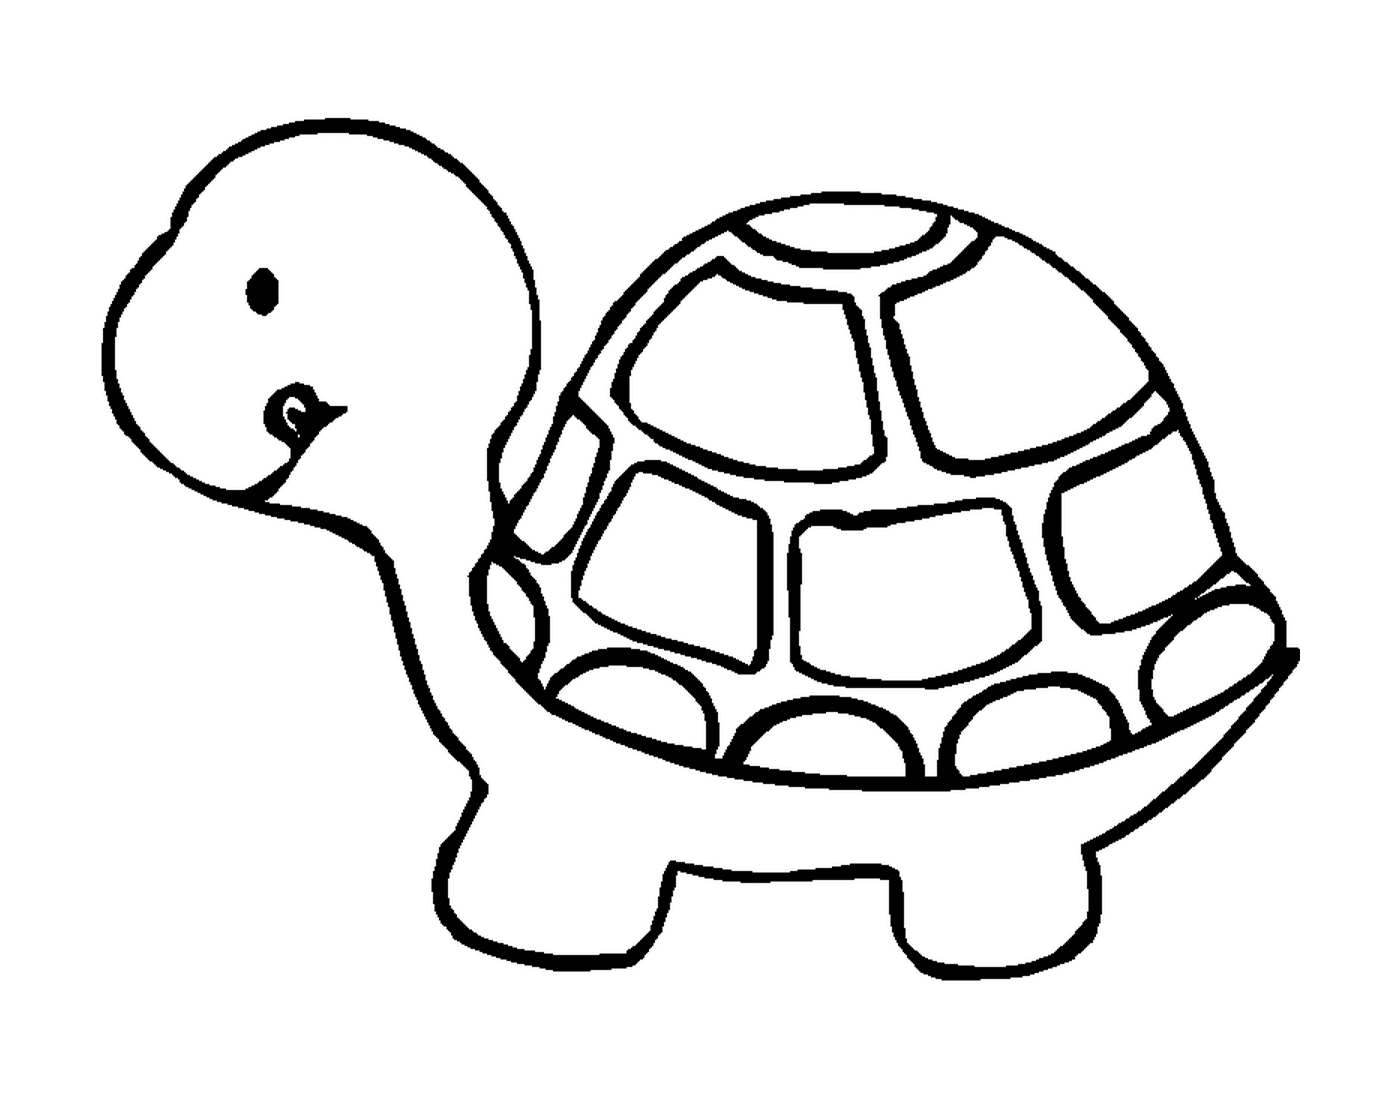  剖图海龟 